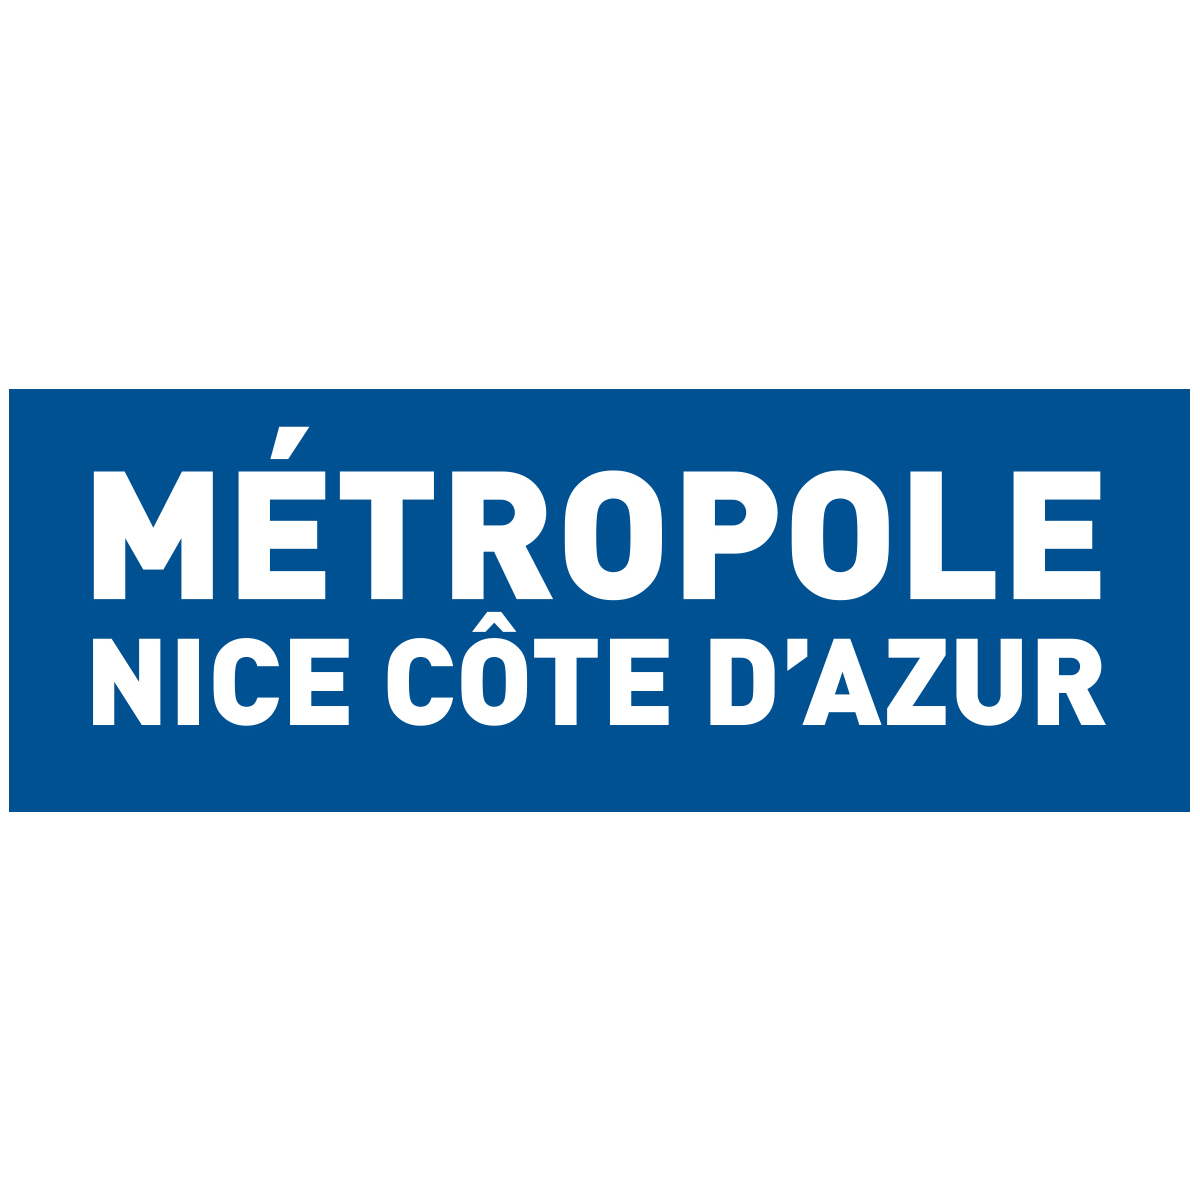 Métropole Nice Côte d’Azur